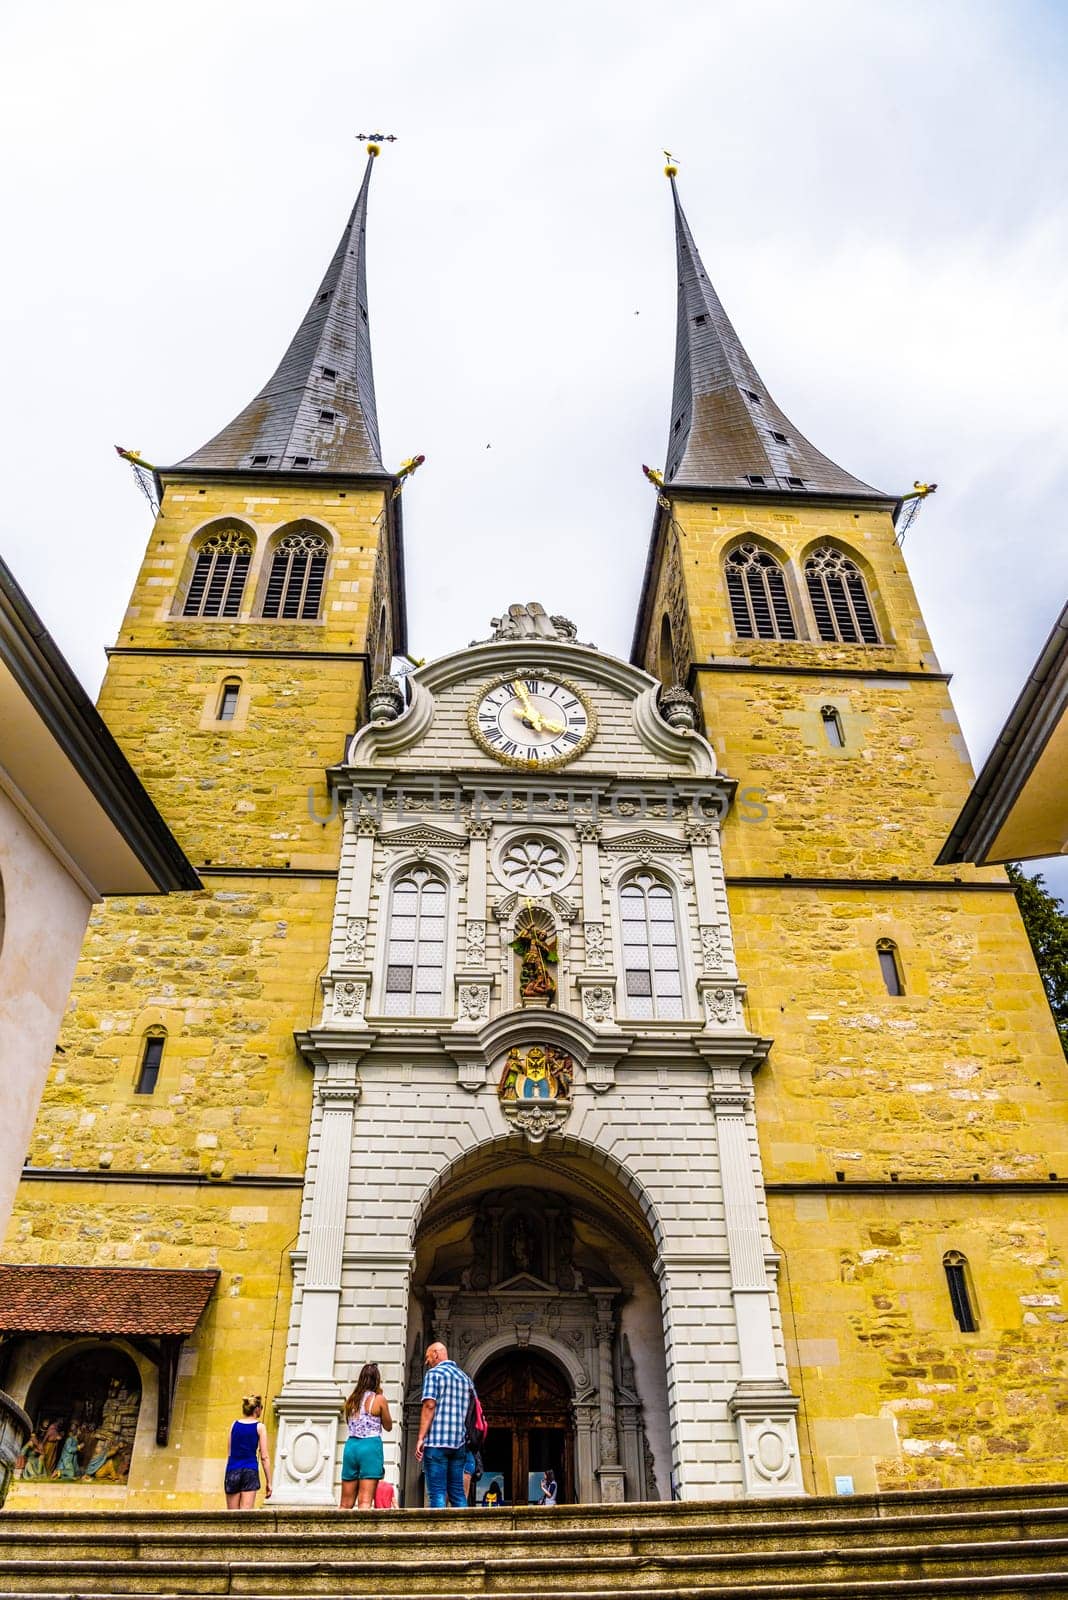 Hofkirche church St. Leodegar in the center of Lucerne, Luzern Switzerland.